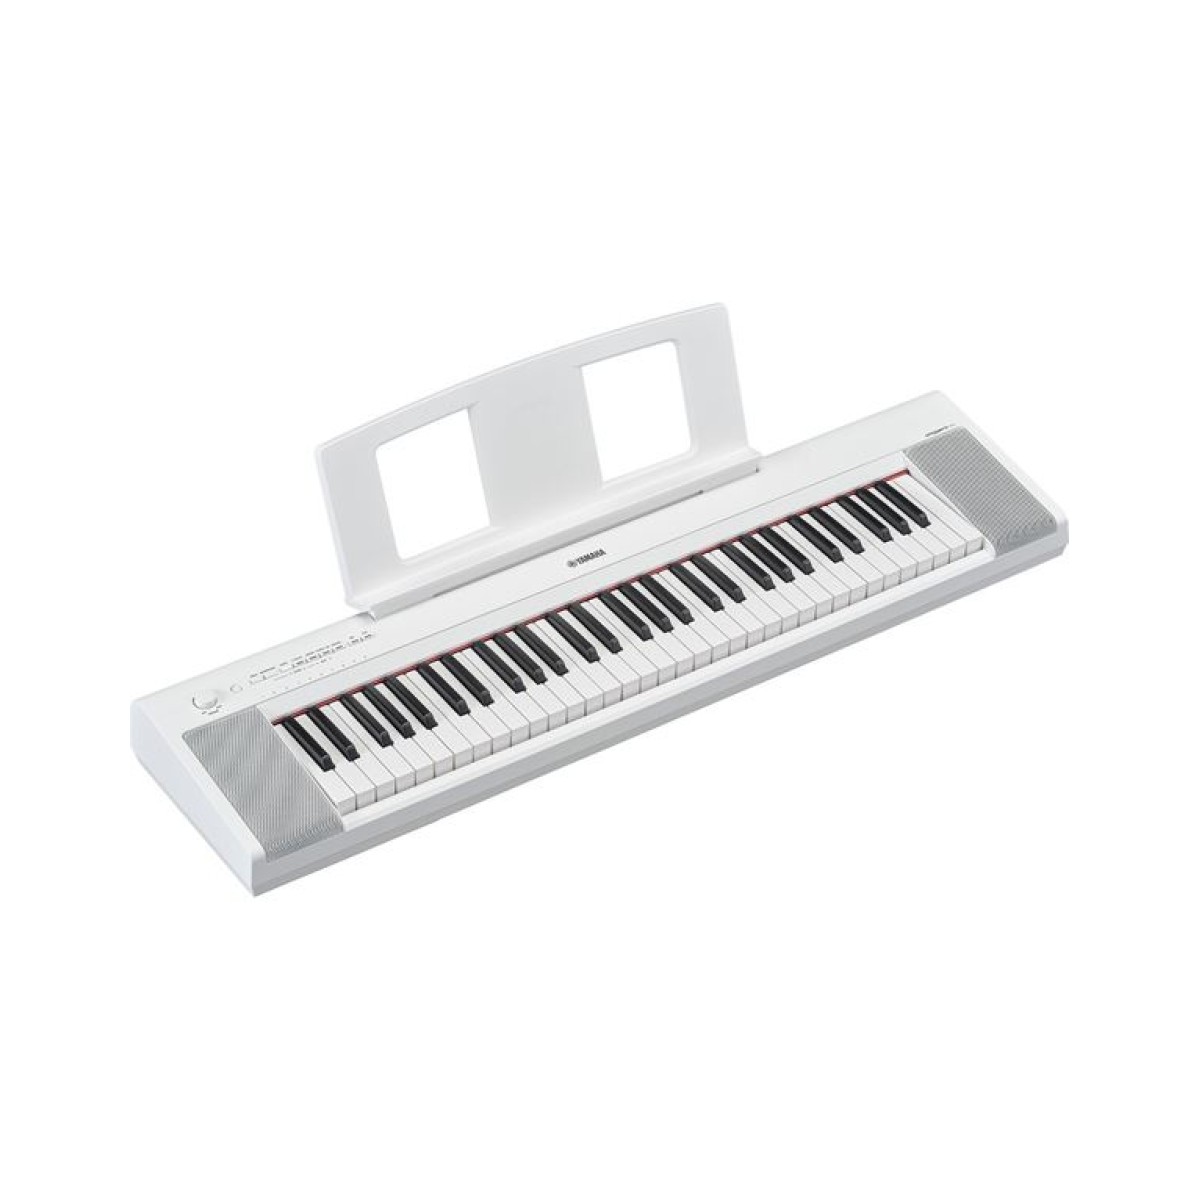 ΥΑΜΑΗΑ NP-15 Piaggero Αρμόνιο/Keyboard Λευκό ( Piano - Style )